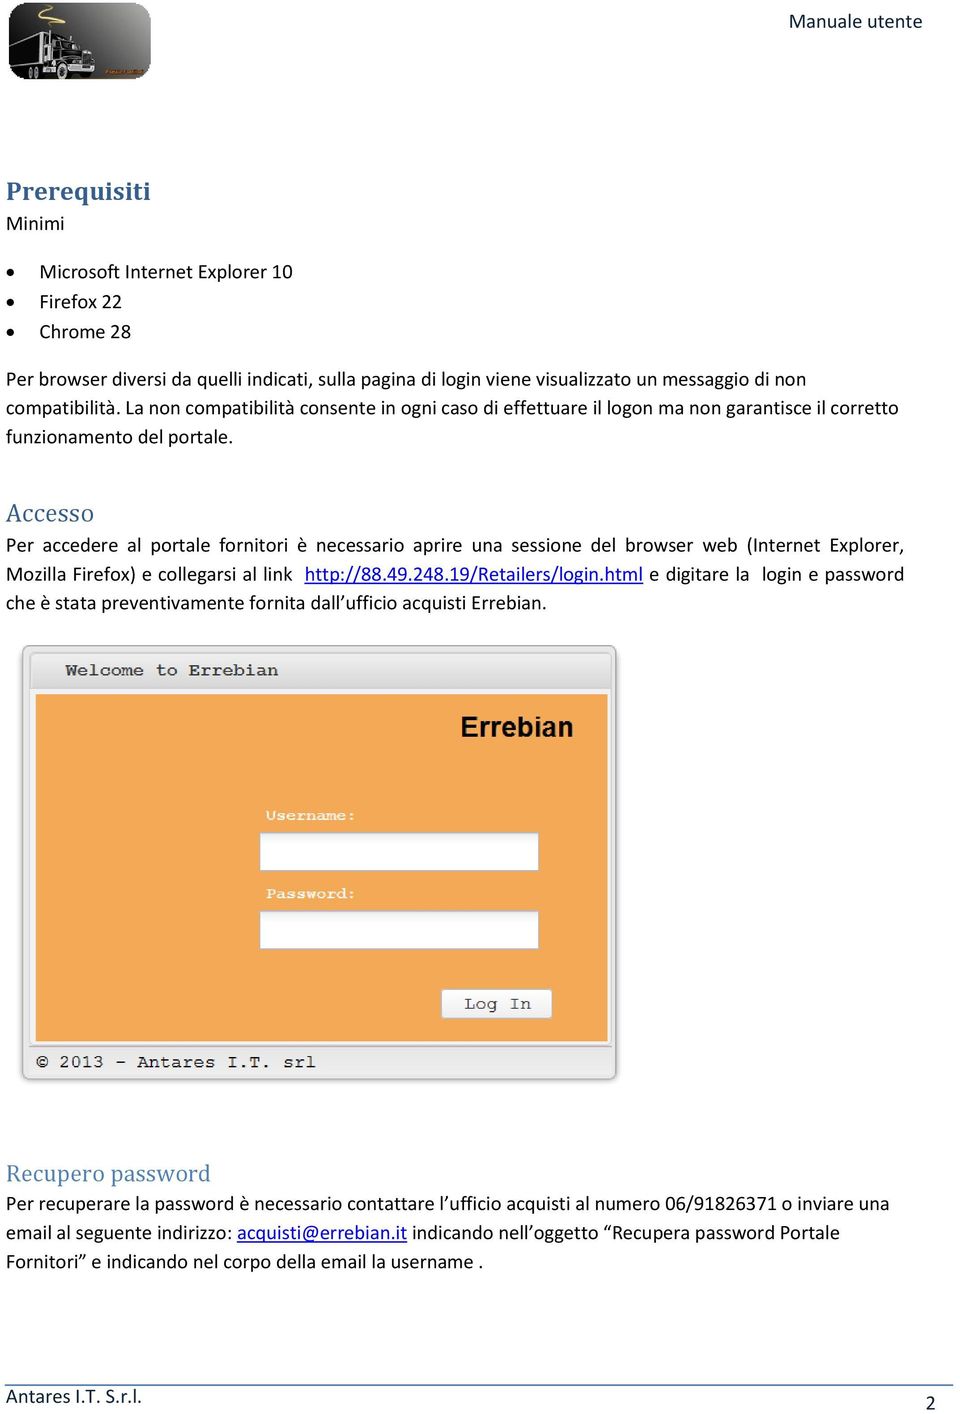 Accesso Per accedere al portale fornitori è necessario aprire una sessione del browser web (Internet Explorer, Mozilla Firefox) e collegarsi al link http://88.49.248.19/retailers/login.